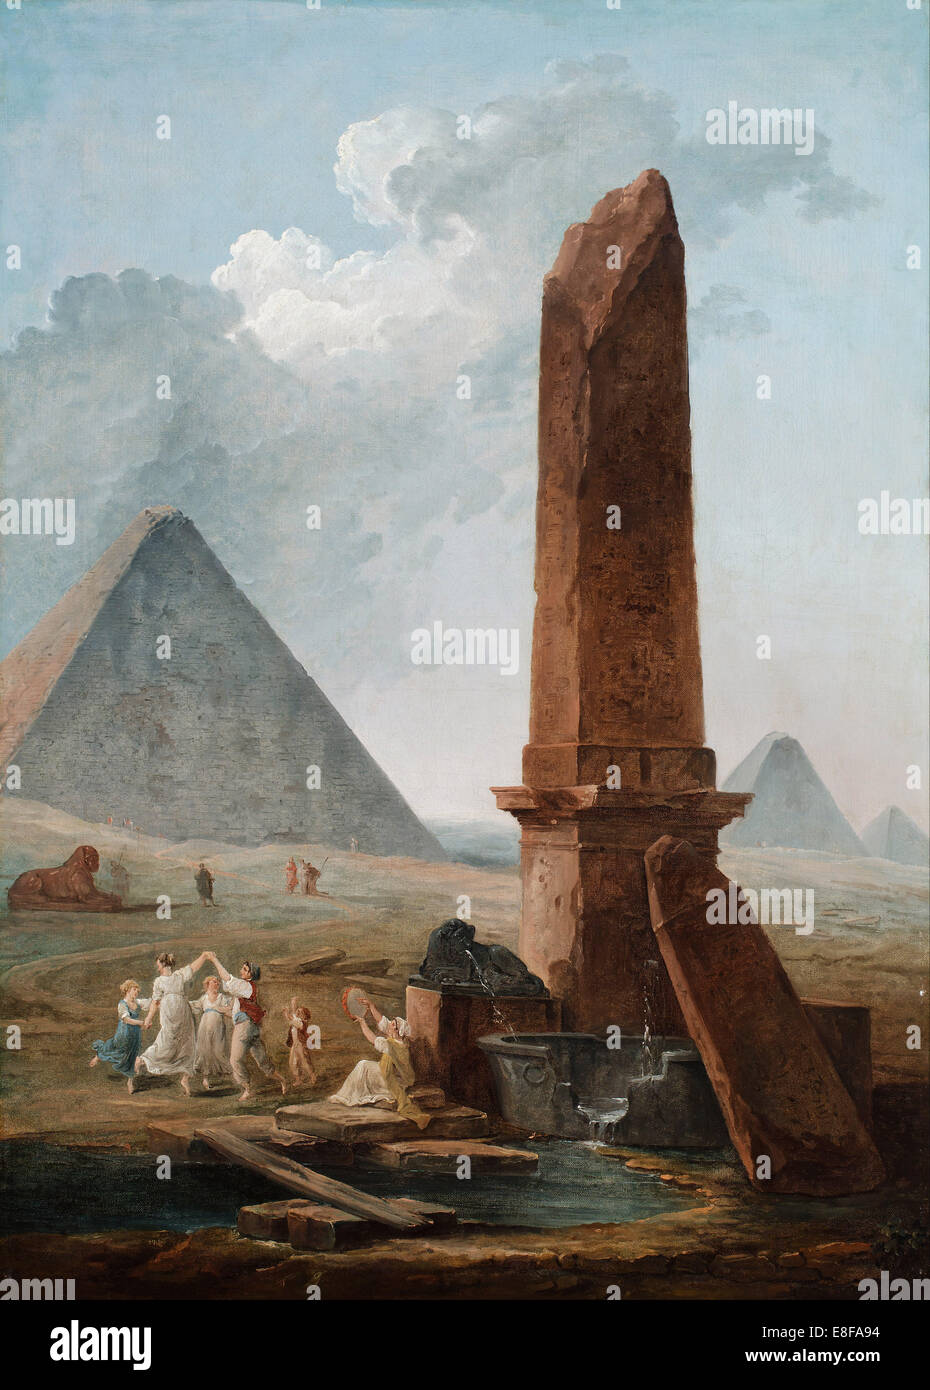 The Farandole Amidst Egyptian Monuments. Artist: Robert, Hubert (1733-1808) Stock Photo